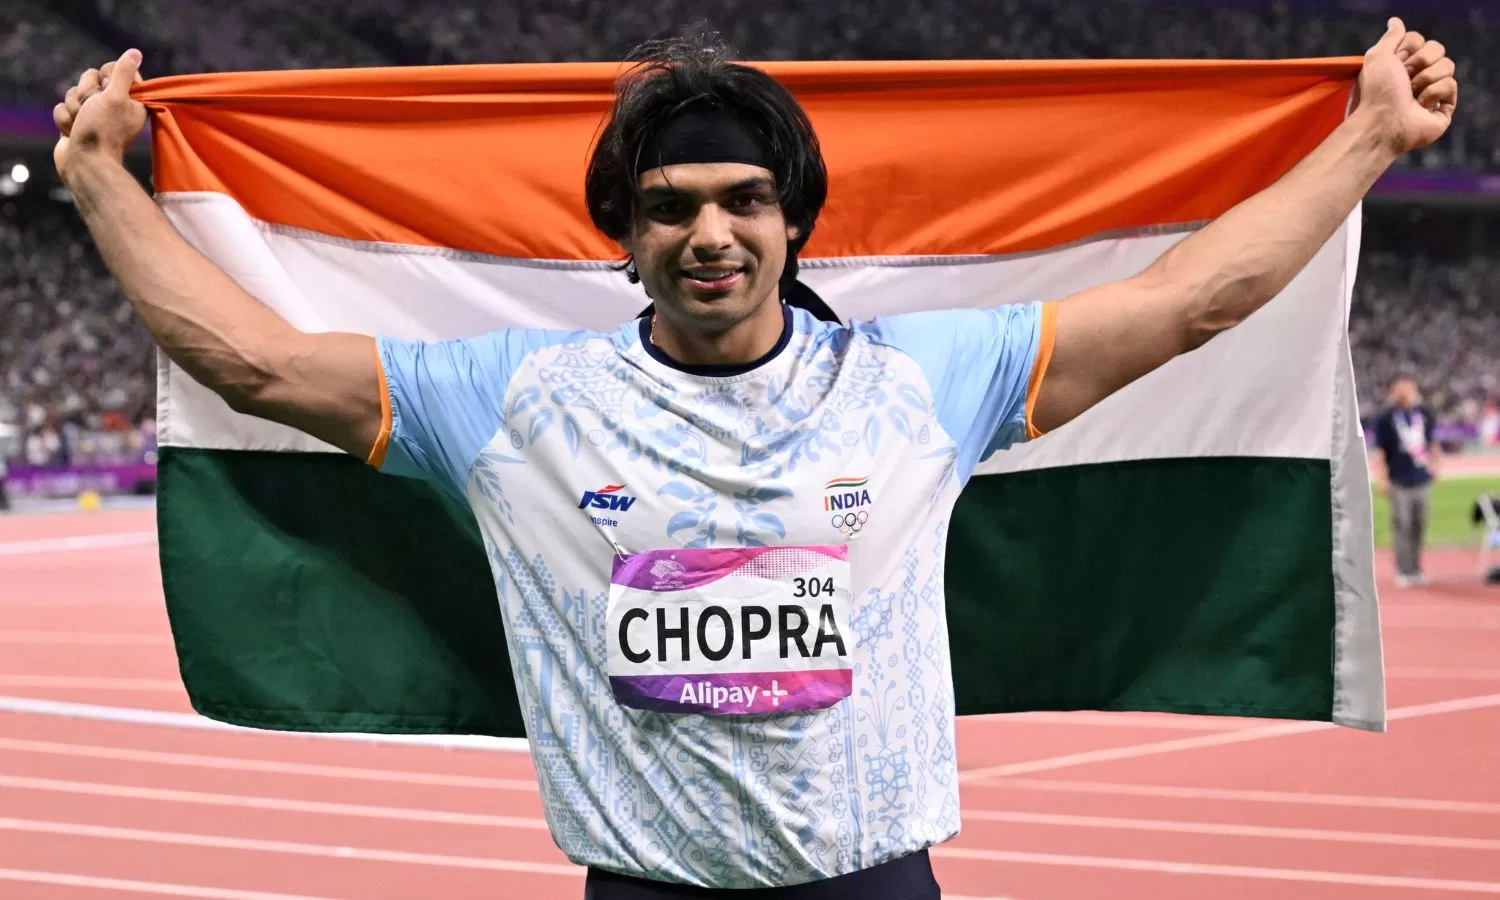 'It would mean a lot to break 90m barrier': World champion Neeraj Chopra